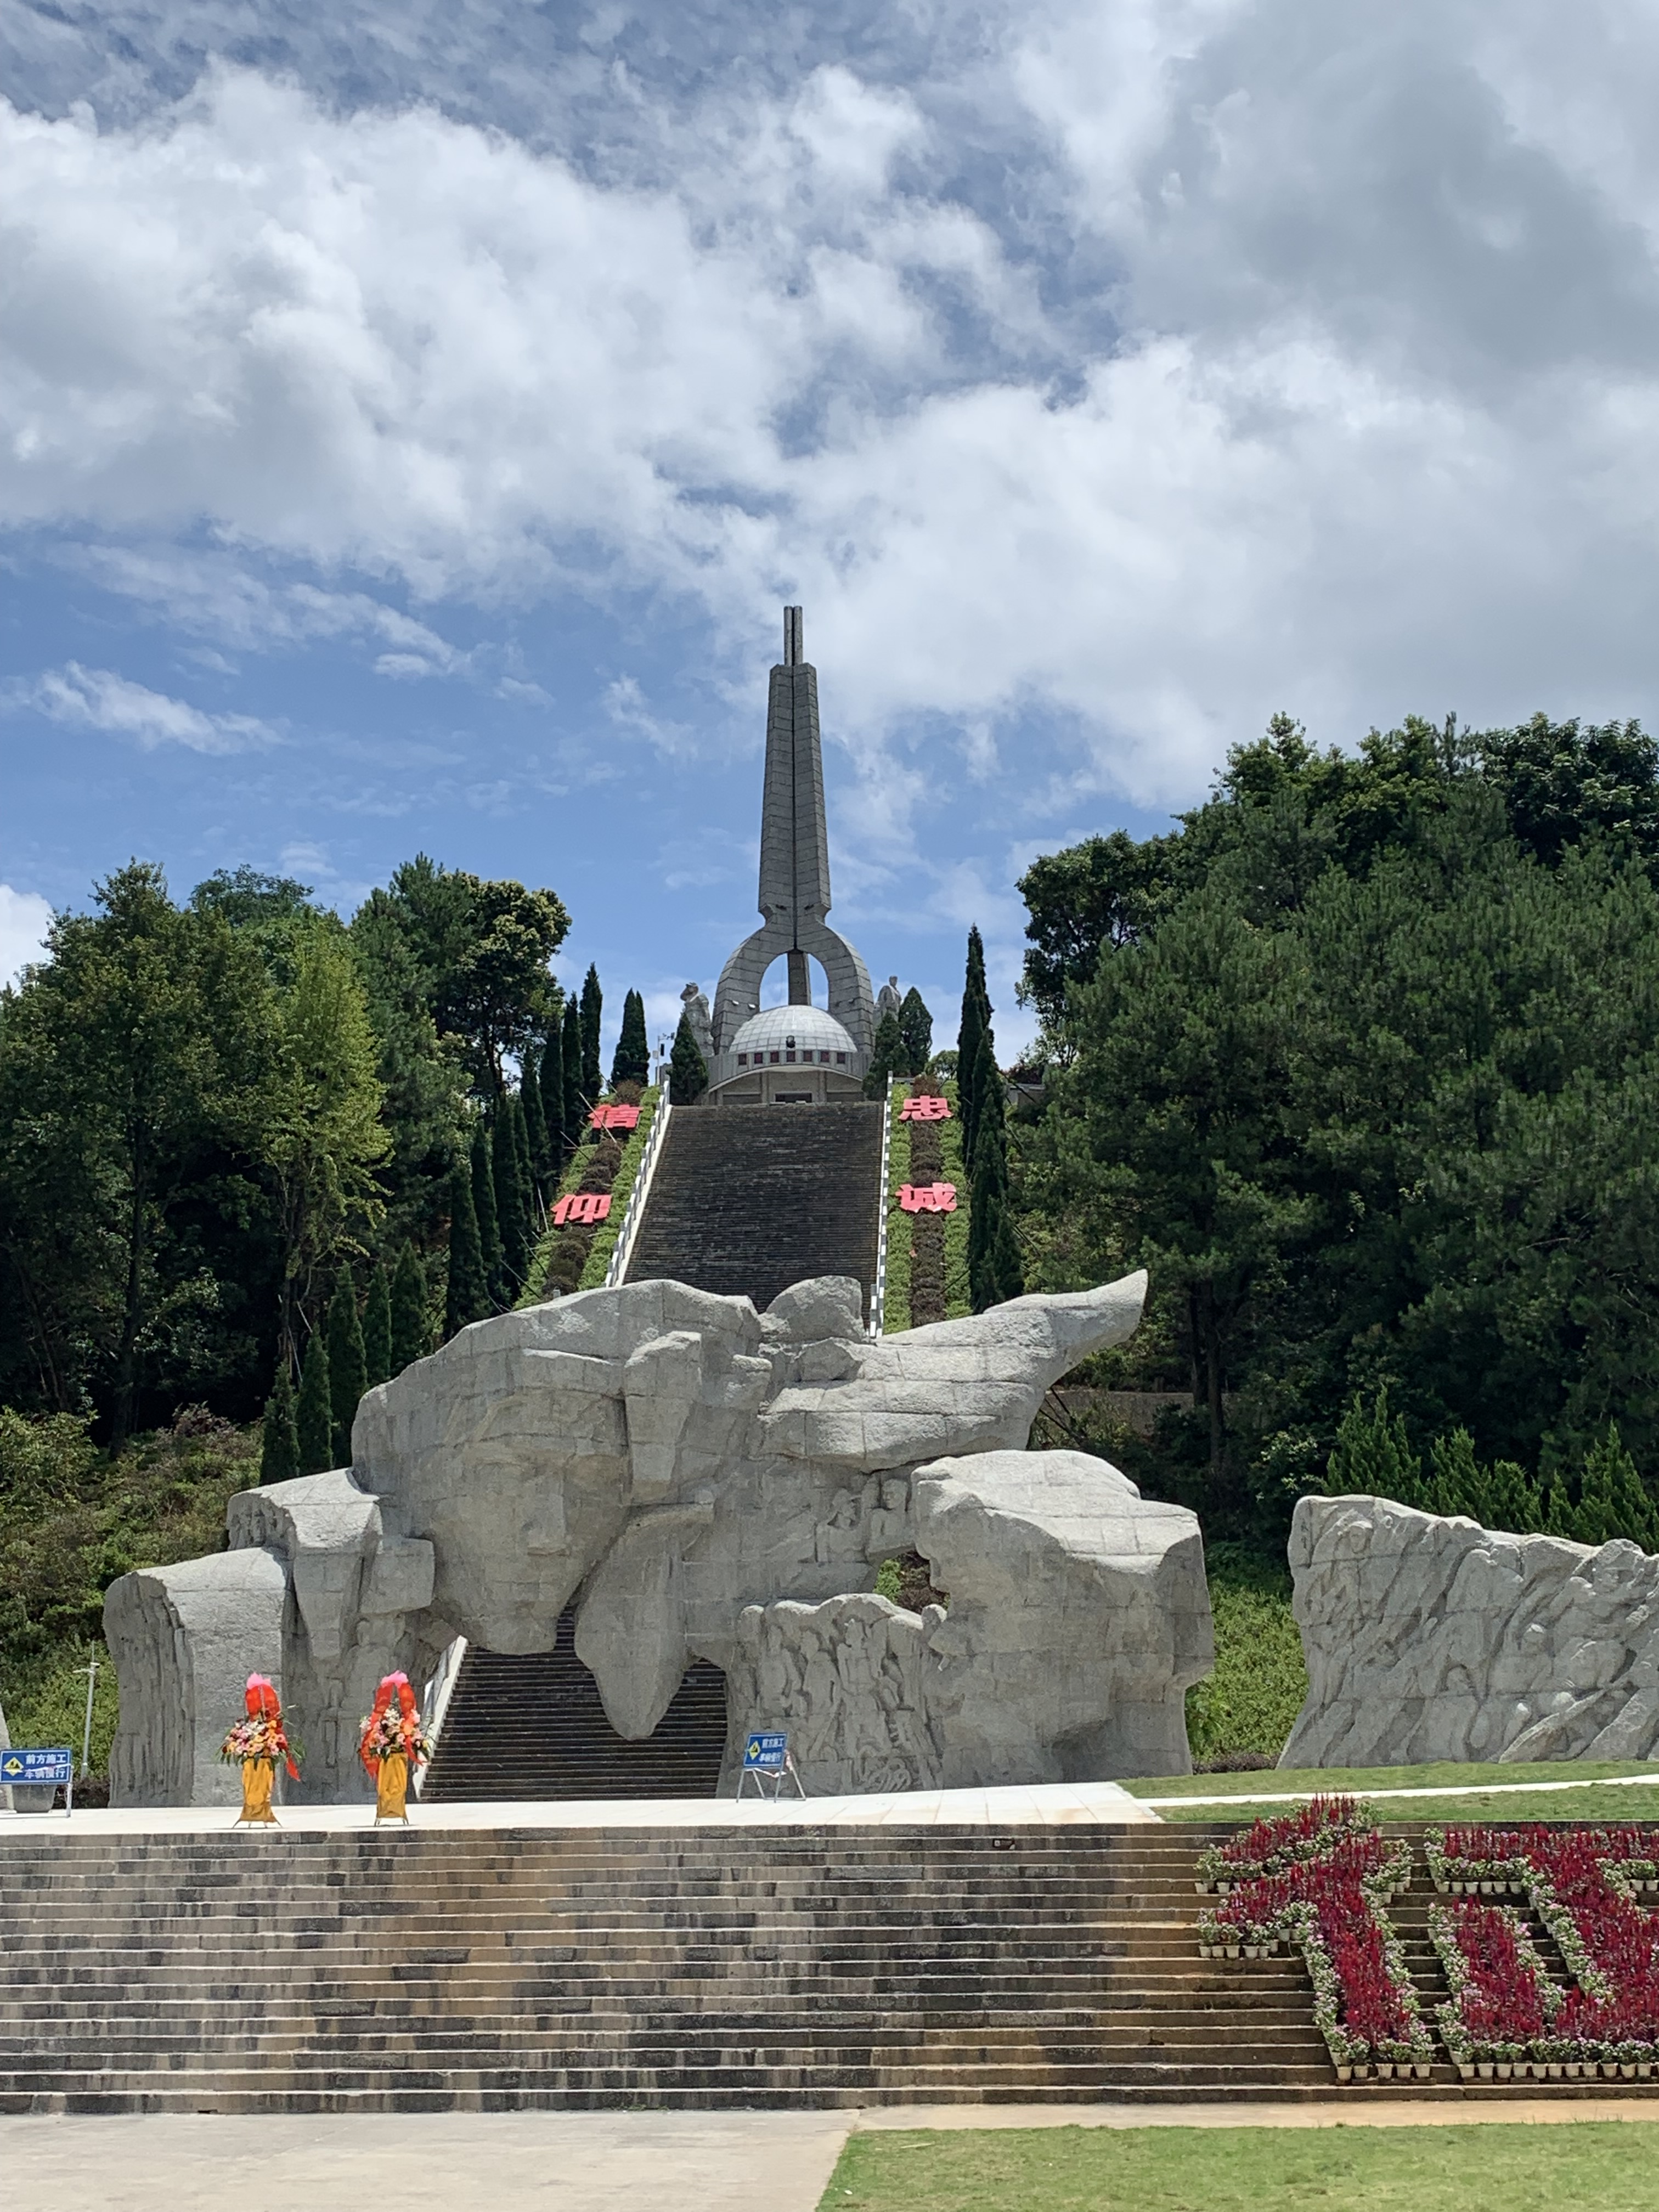 湘江戰役紀念館